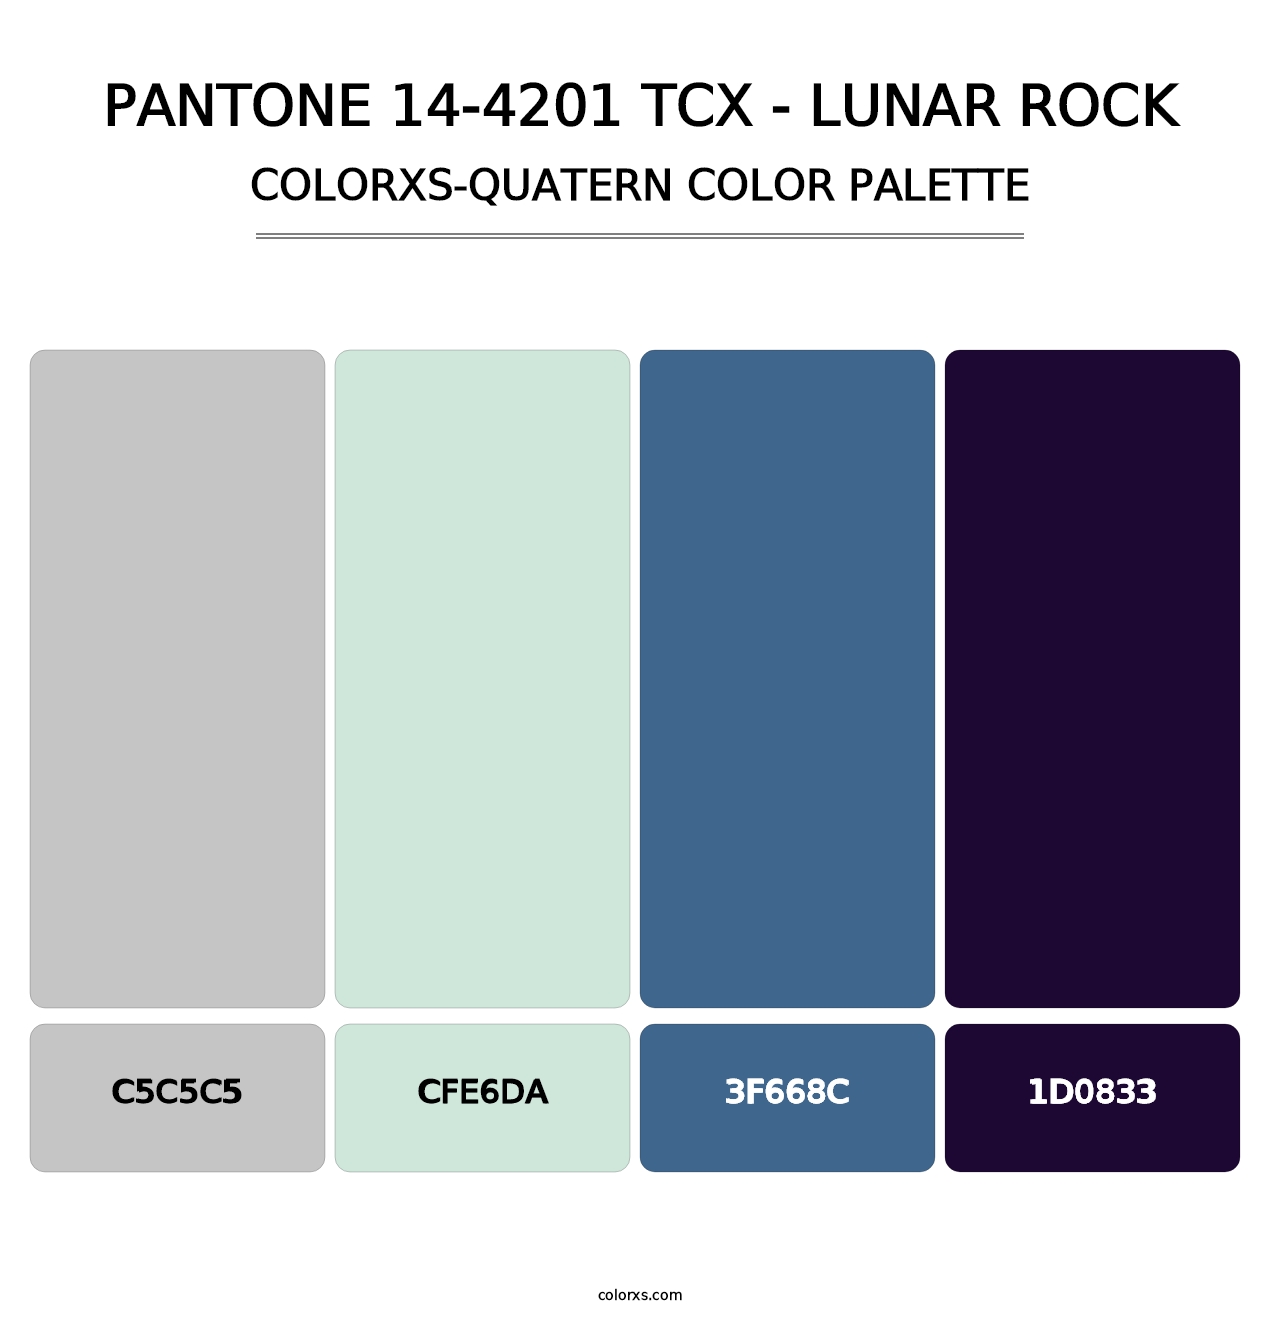 PANTONE 14-4201 TCX - Lunar Rock - Colorxs Quatern Palette